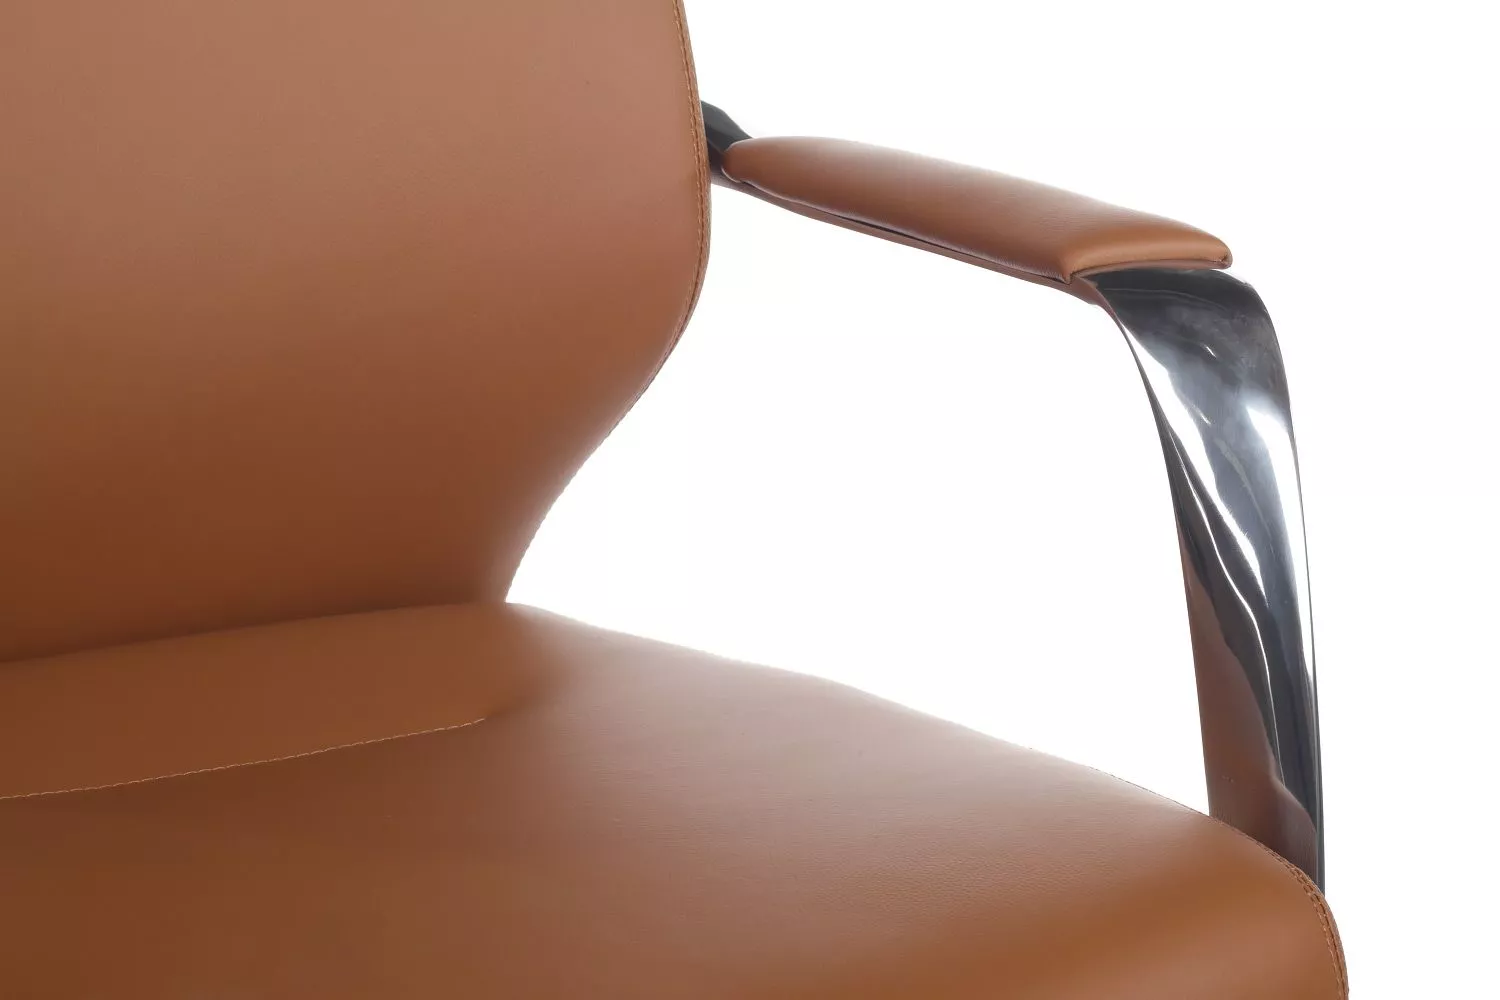 Кресло RIVA DESIGN Alonzo (А1711) светло-коричневый